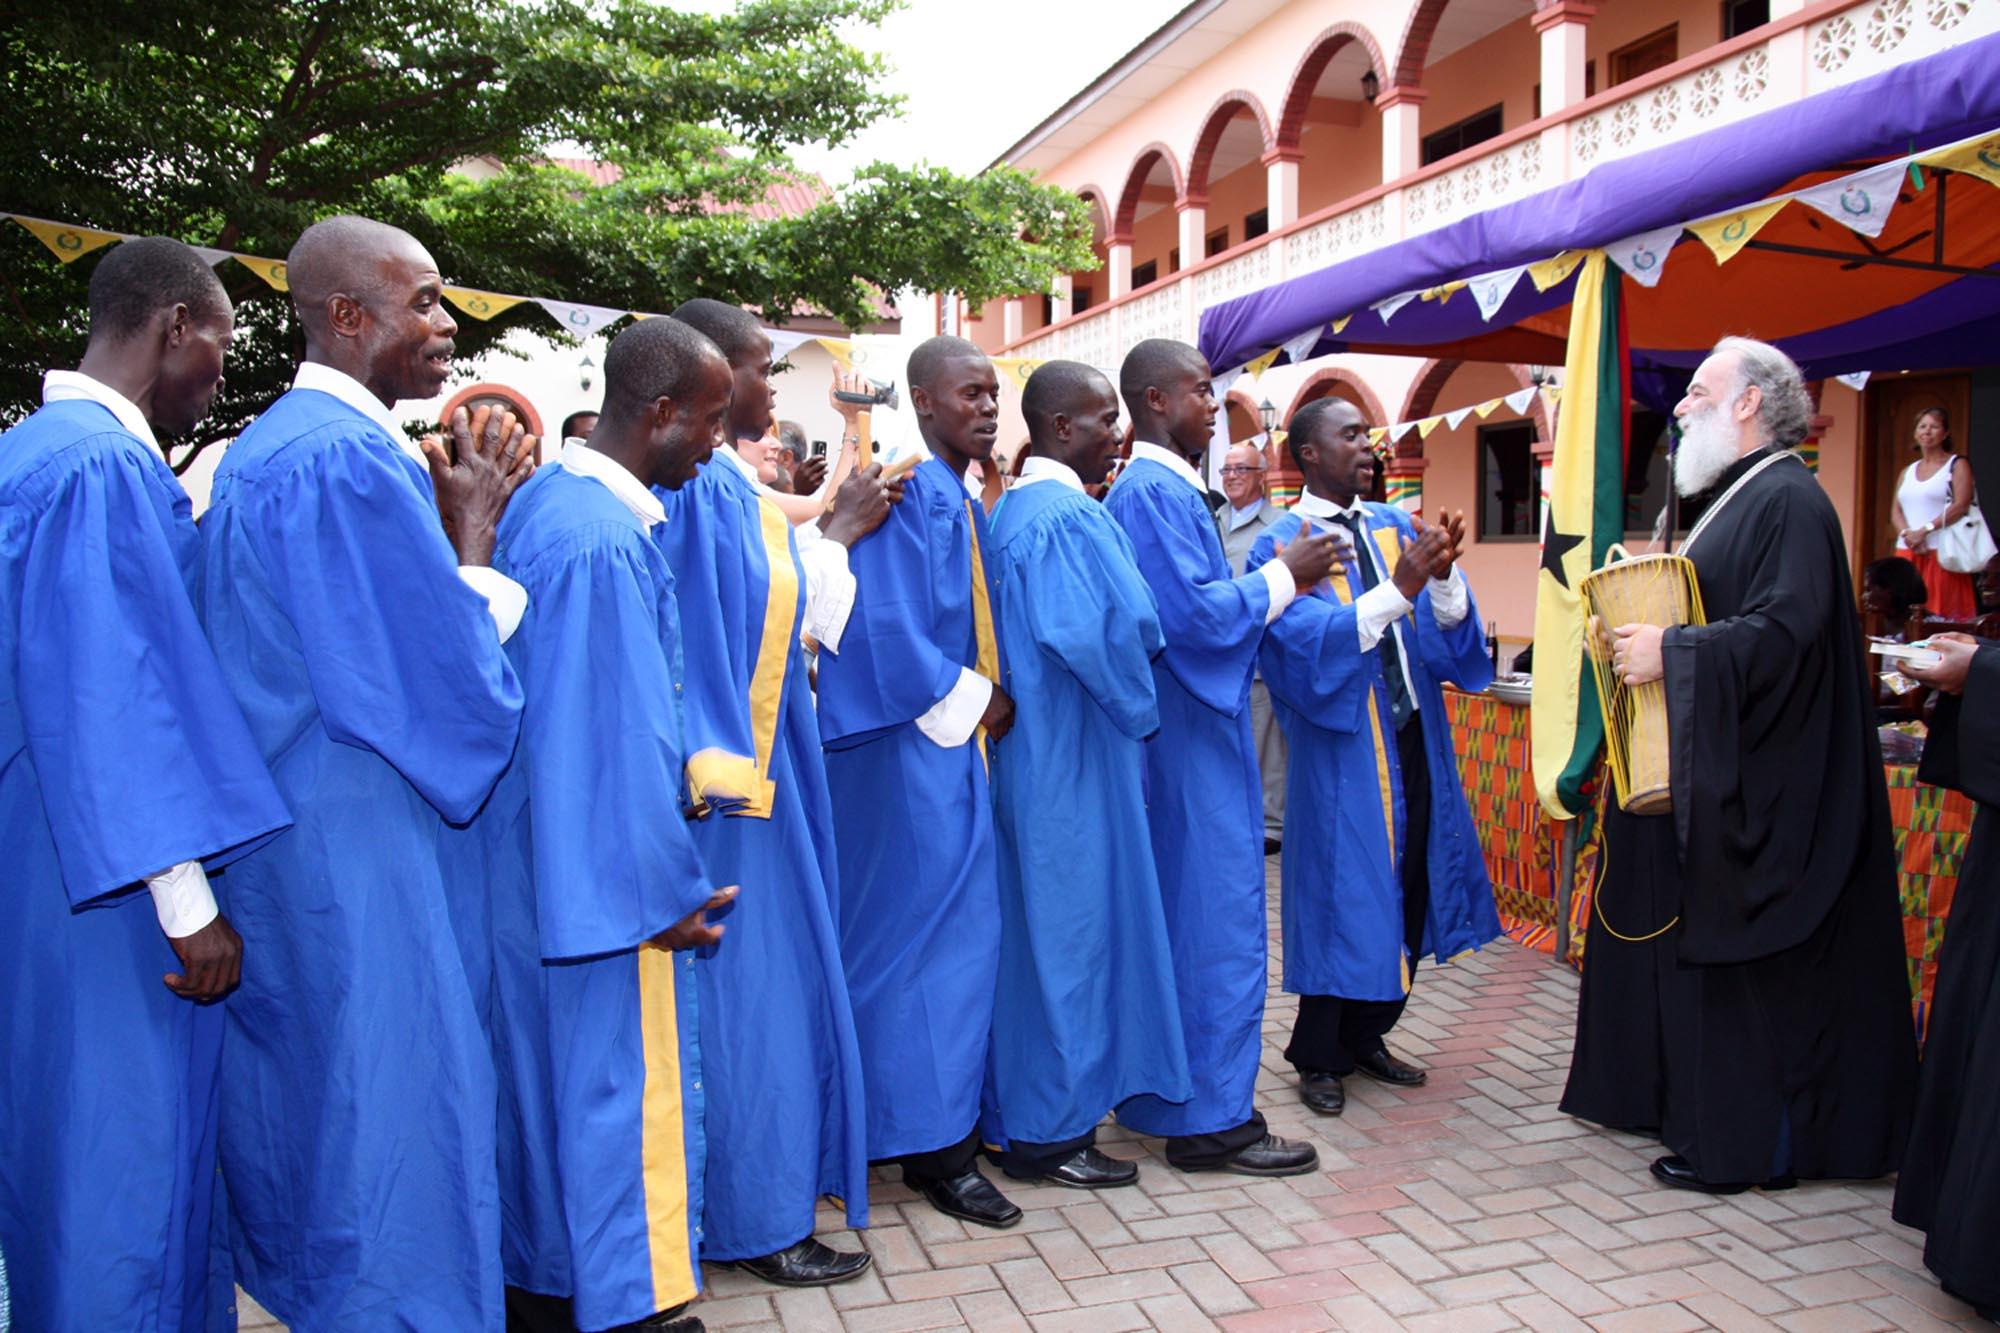 Ιεραποστολική επίσκεψη της Α.Θ.Μ. στην Γκάνα - Εγκαίνια του νέου Εκκλησιαστικού Σεμιναρίου της Ιεράς Επισκοπής Γκάνας από την ΑΘΜ.